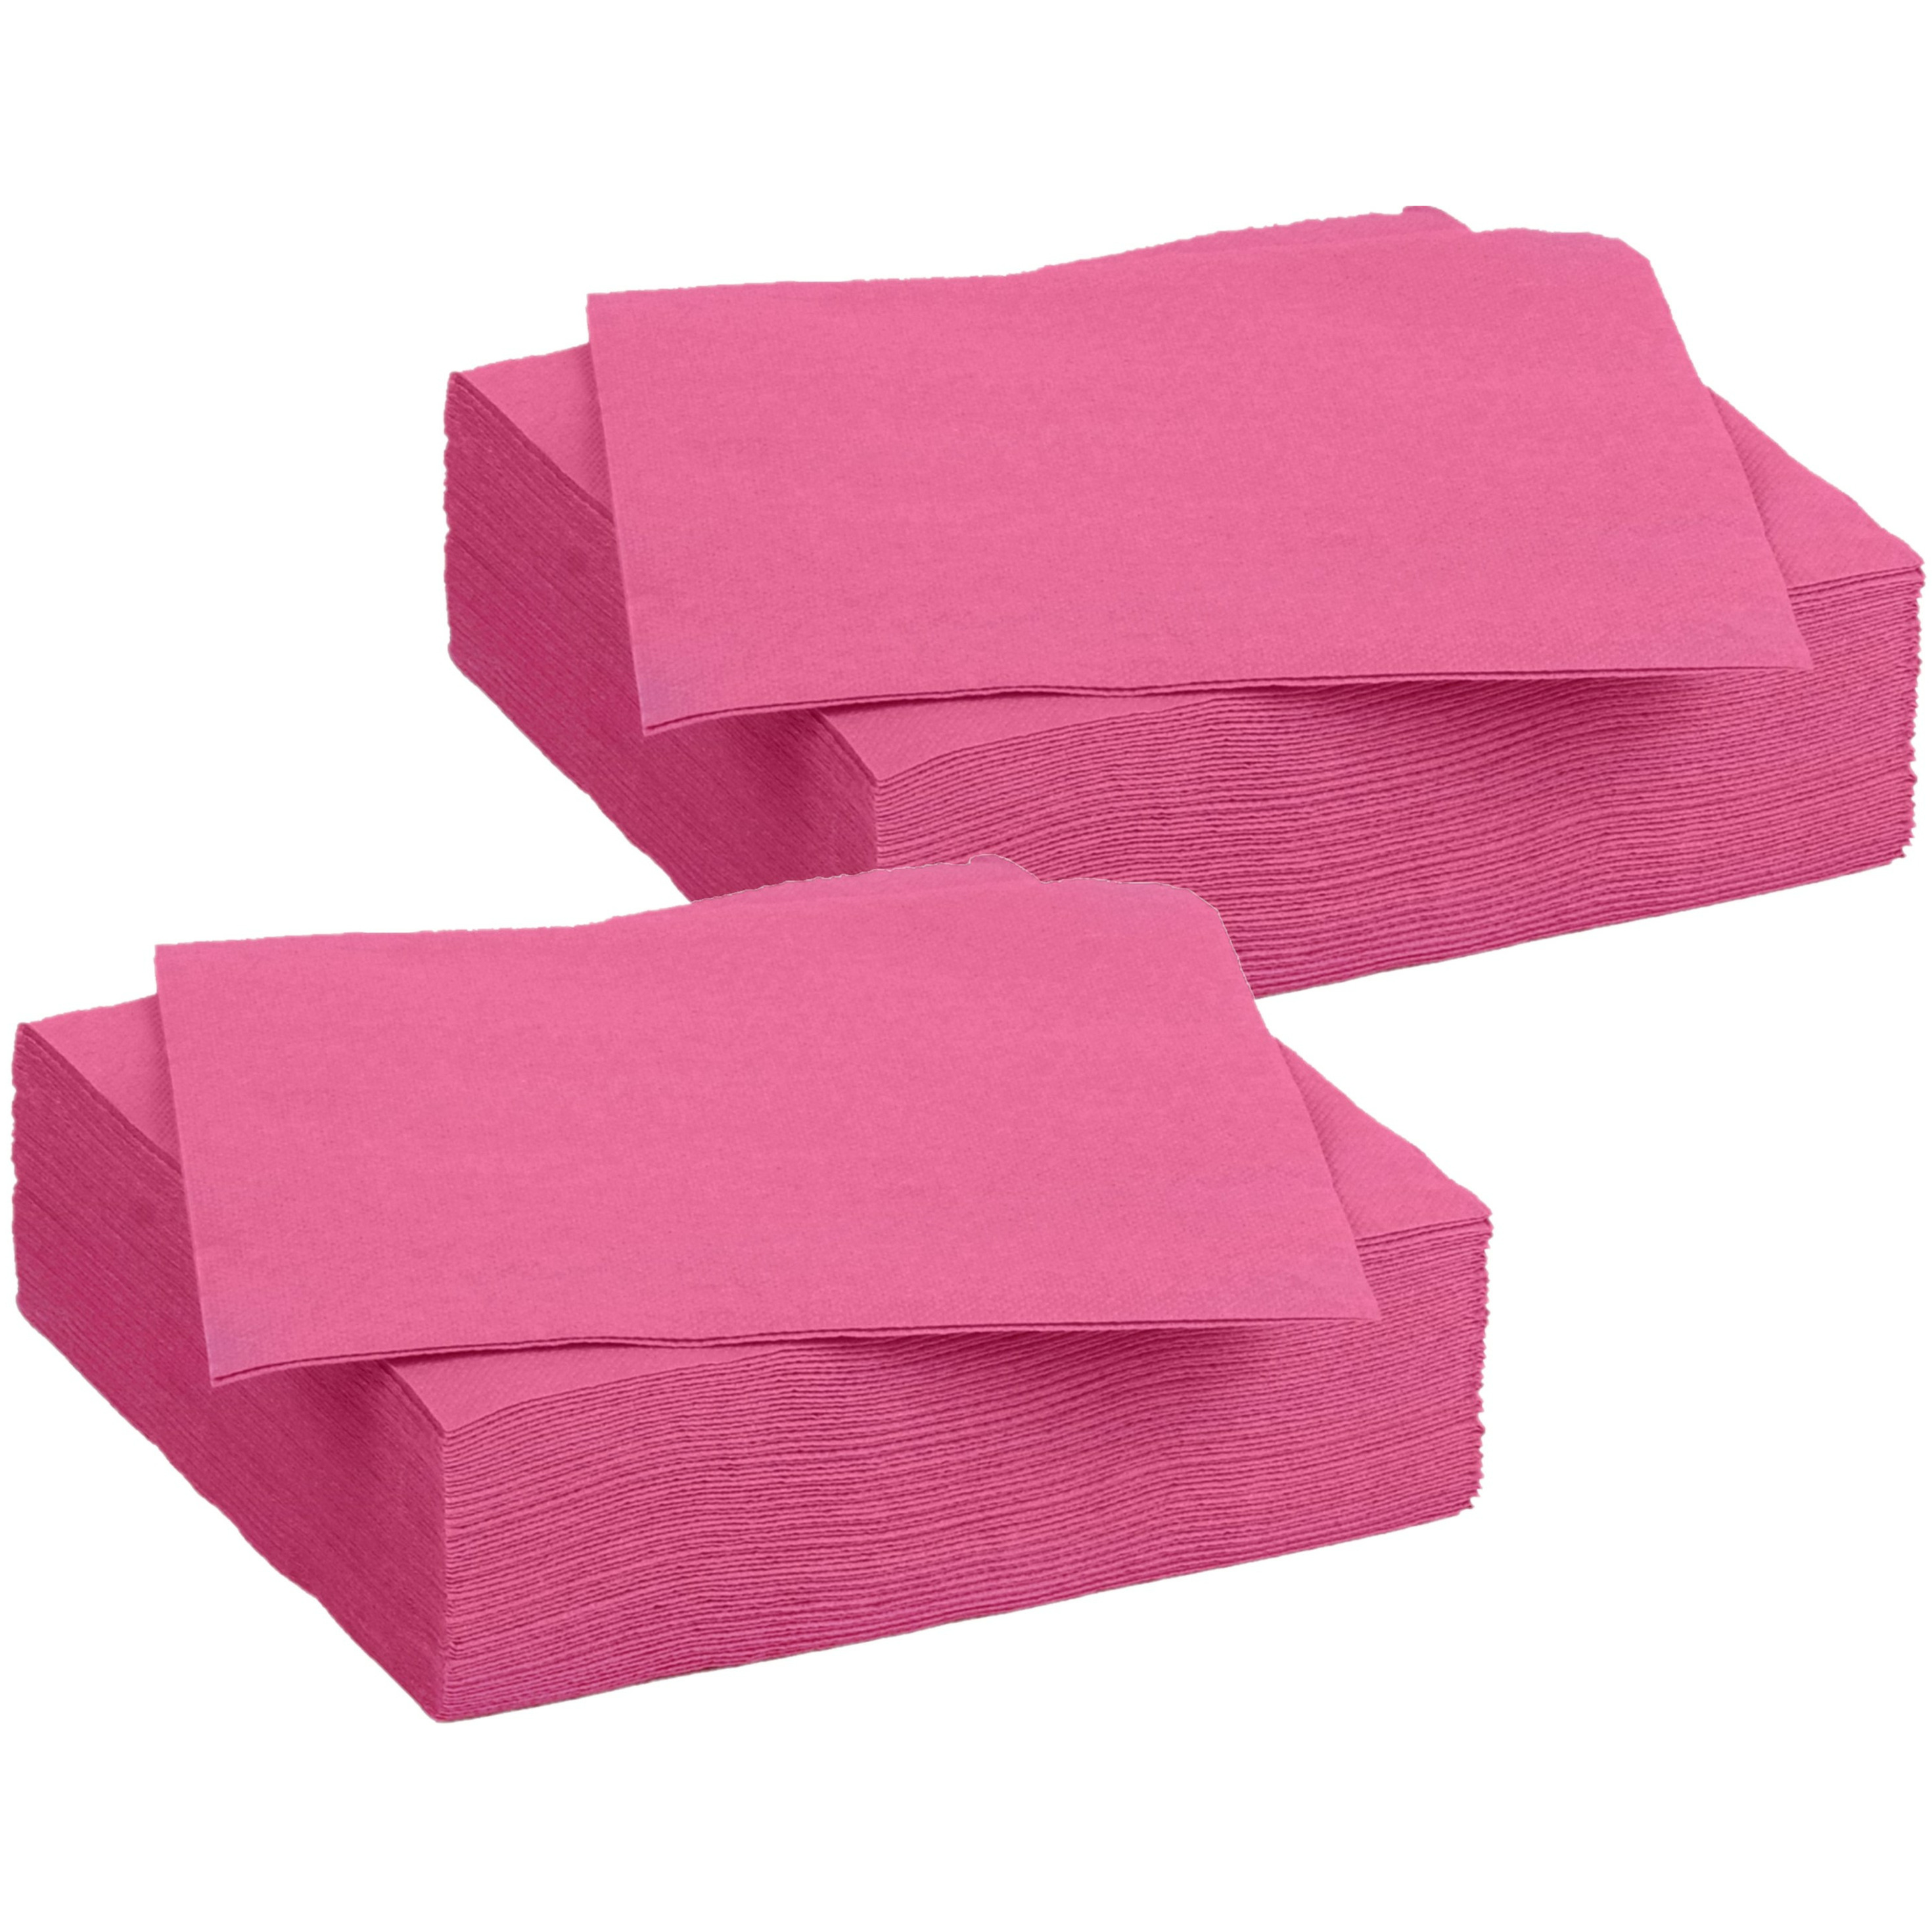 Diner-feest servetten 60x fuchsia roze 38 x 38 cm papier 3-laags